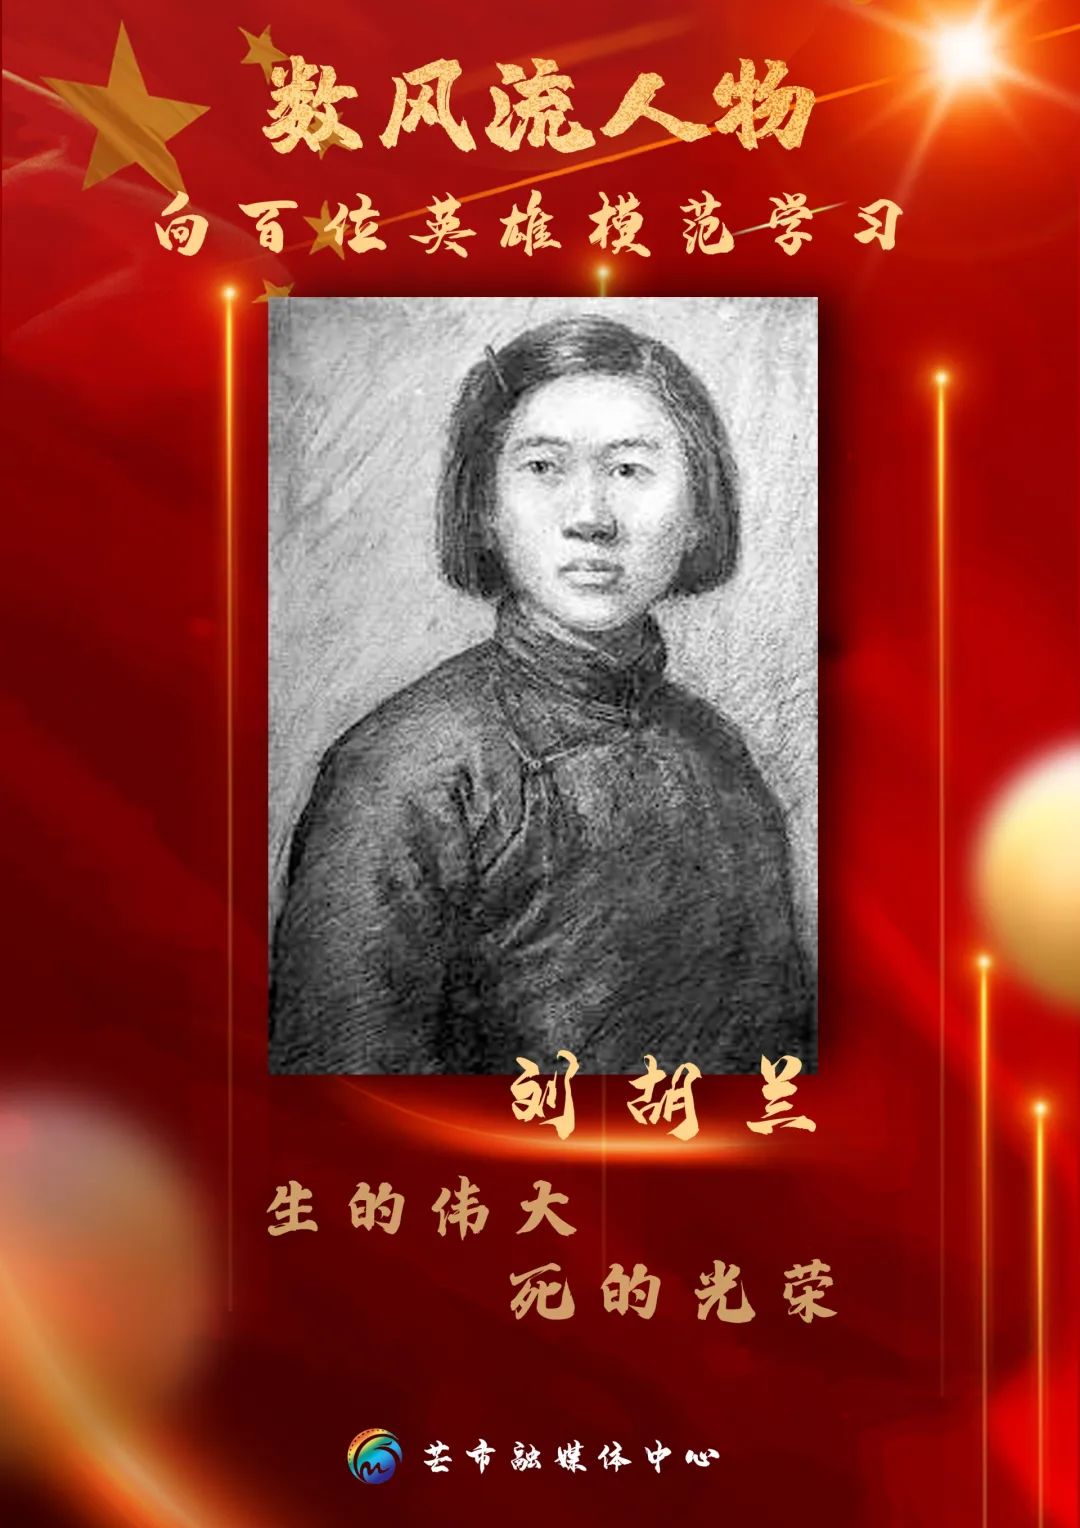 刘胡兰2009年当选100位为新中国成立作出突出贡献的英雄模范人物